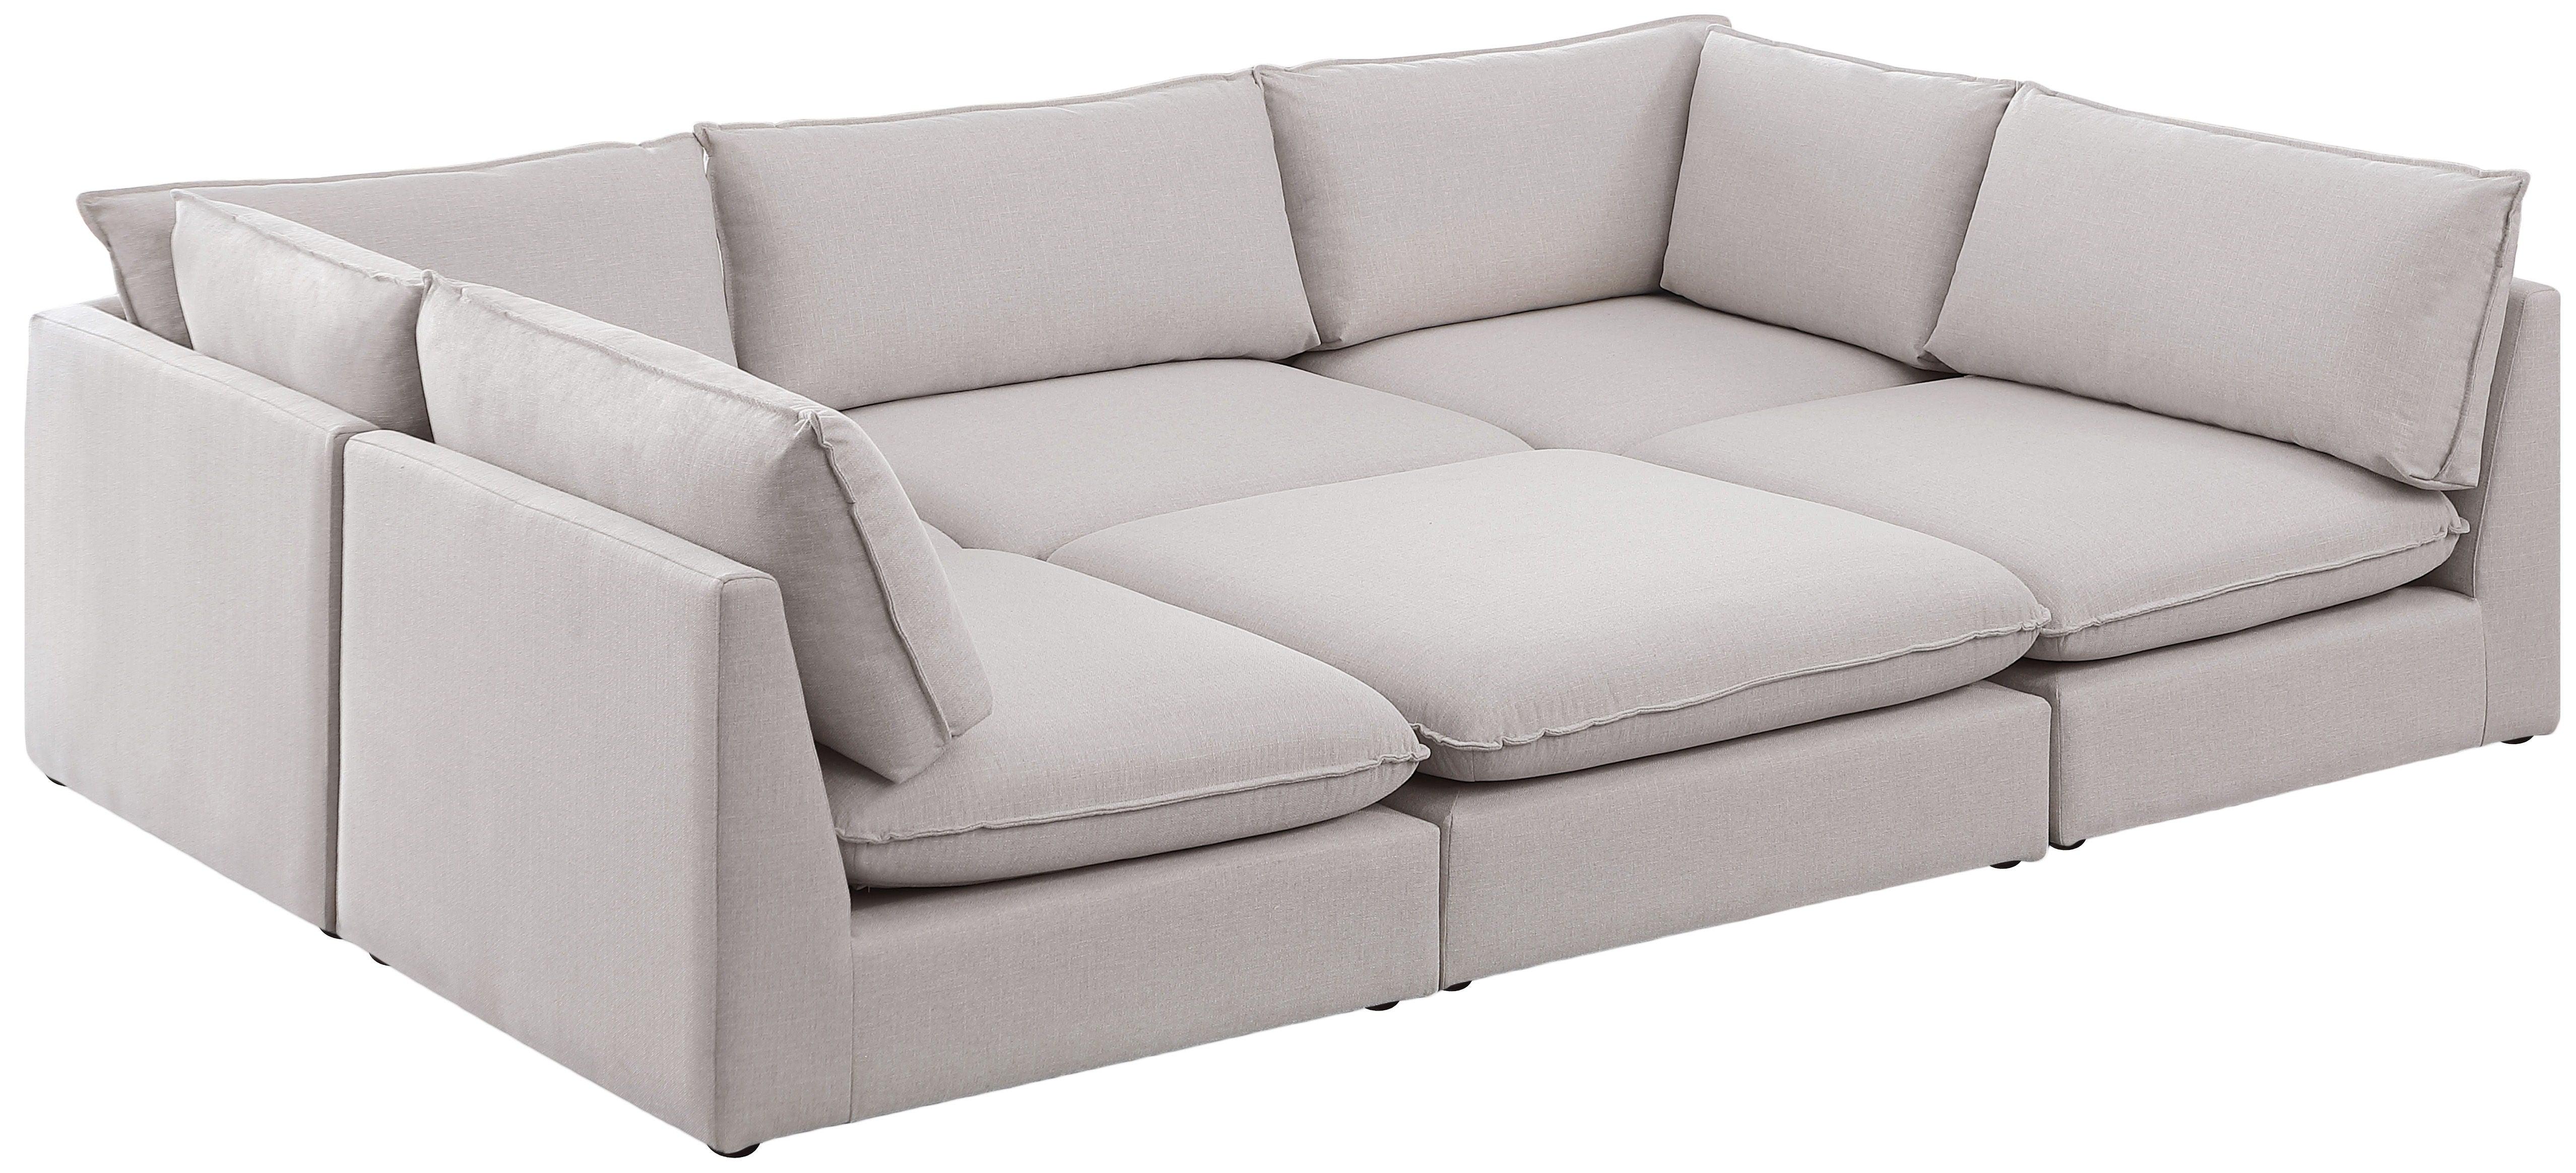 Meridian Furniture - Mackenzie - Modular Sectional 6 Piece - Beige - 5th Avenue Furniture